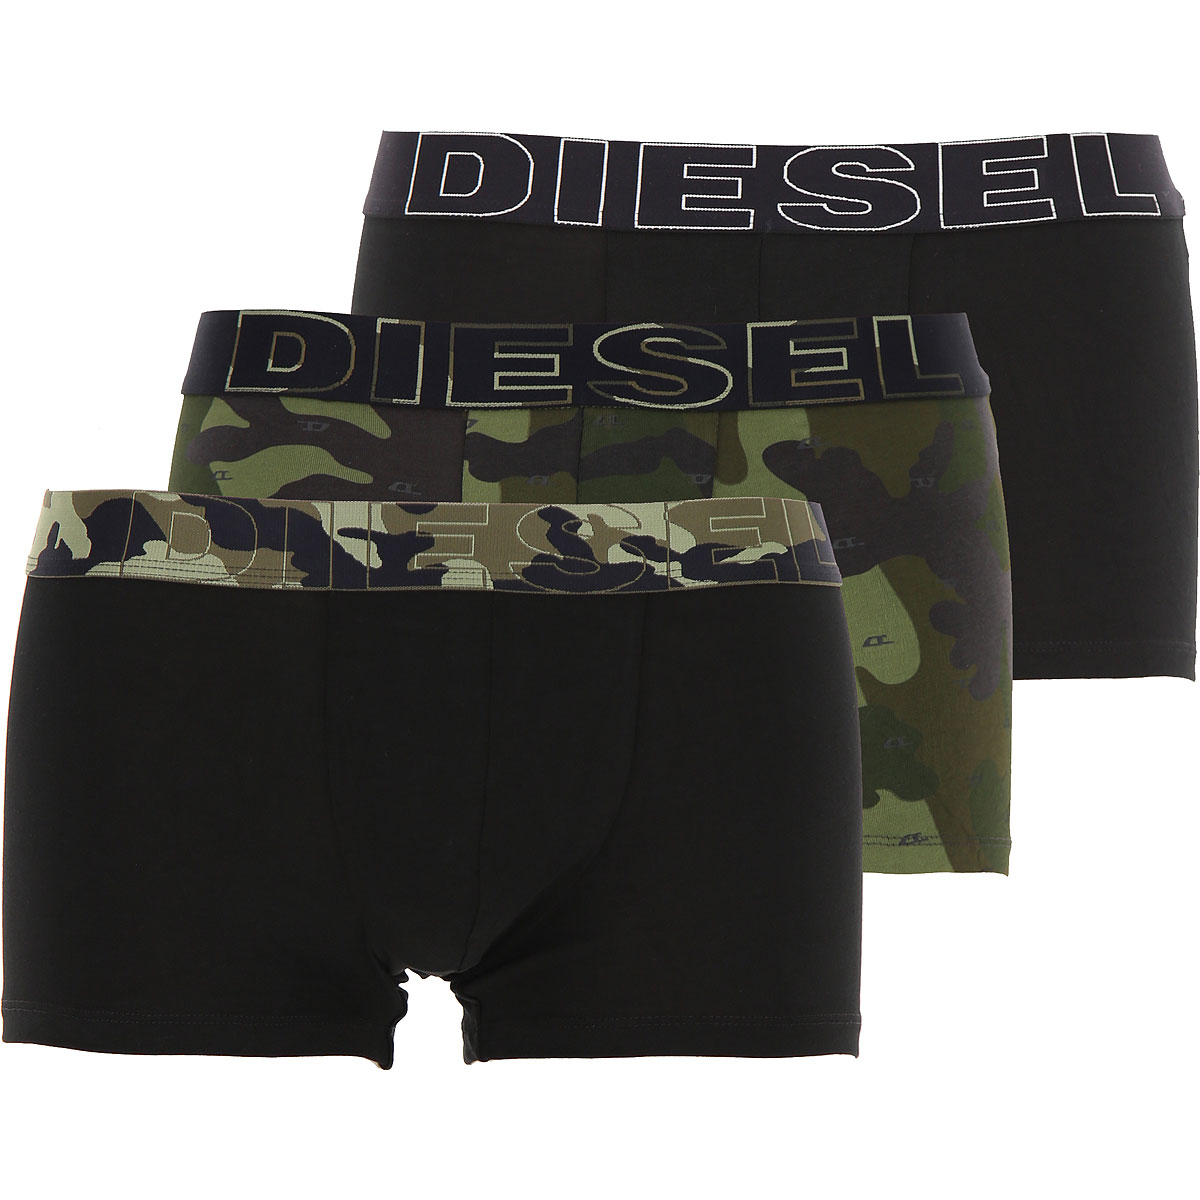 Diesel Boxer Shorts für Herren, Unterhose, Short, Boxer Günstig im Sale, 3 Pack, Schwarz, Baumwolle, 2017, M S XL